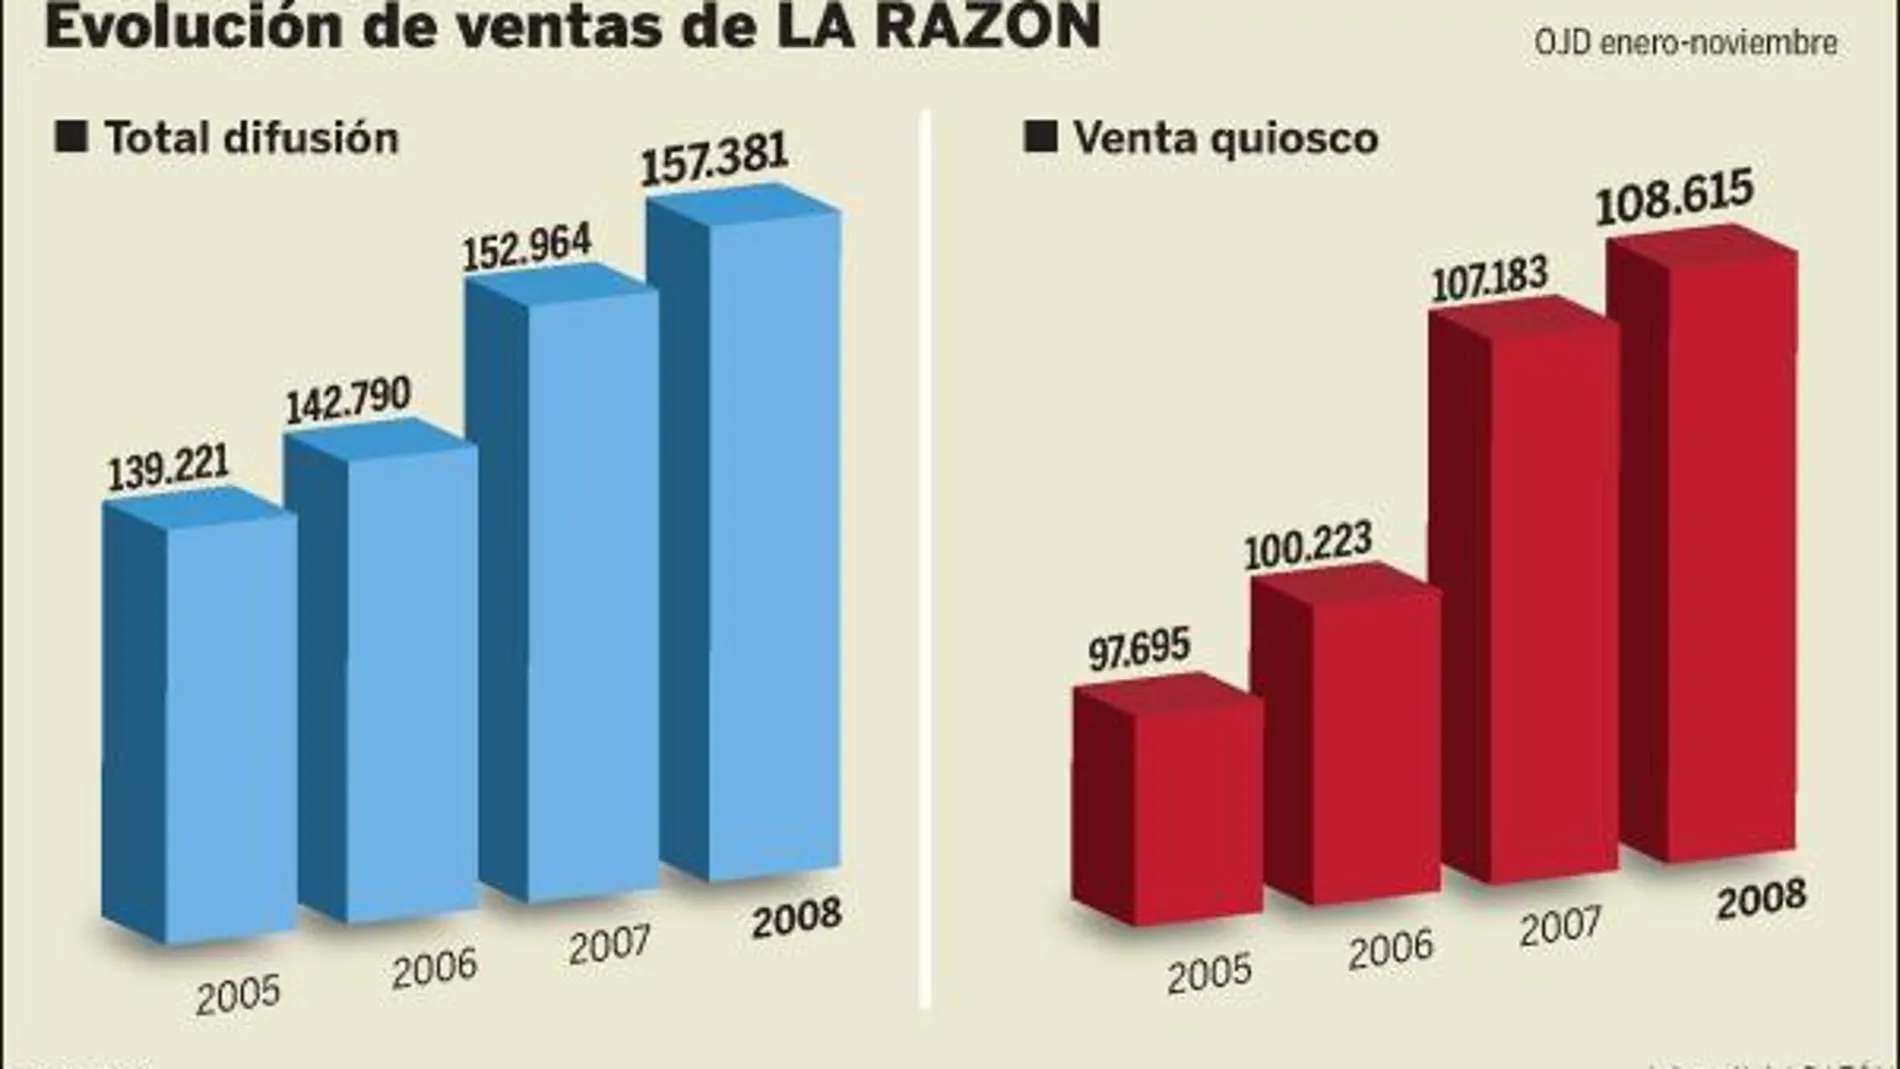 LA RAZÓN eleva, desde 2005,su difusión en 18.160 ejemplares